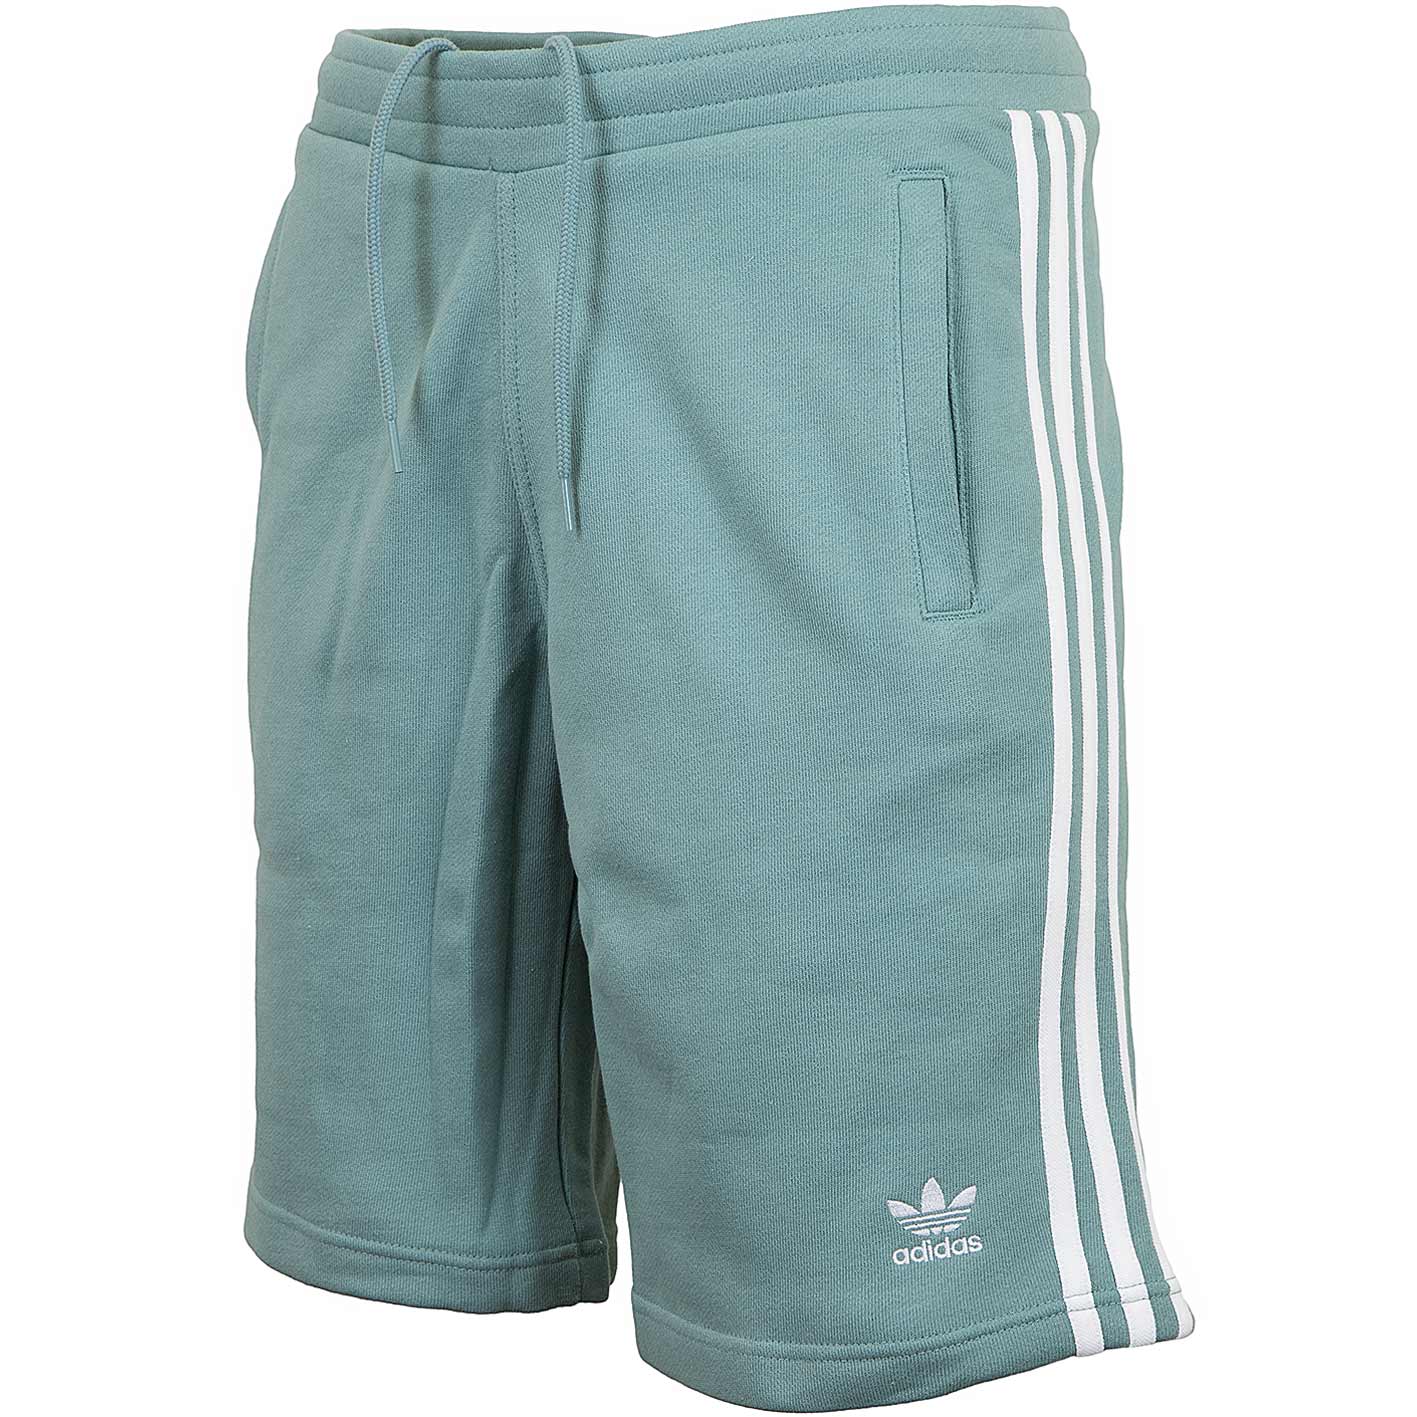 ☆ Adidas Originals Shorts 3-Stripes grün - hier bestellen!